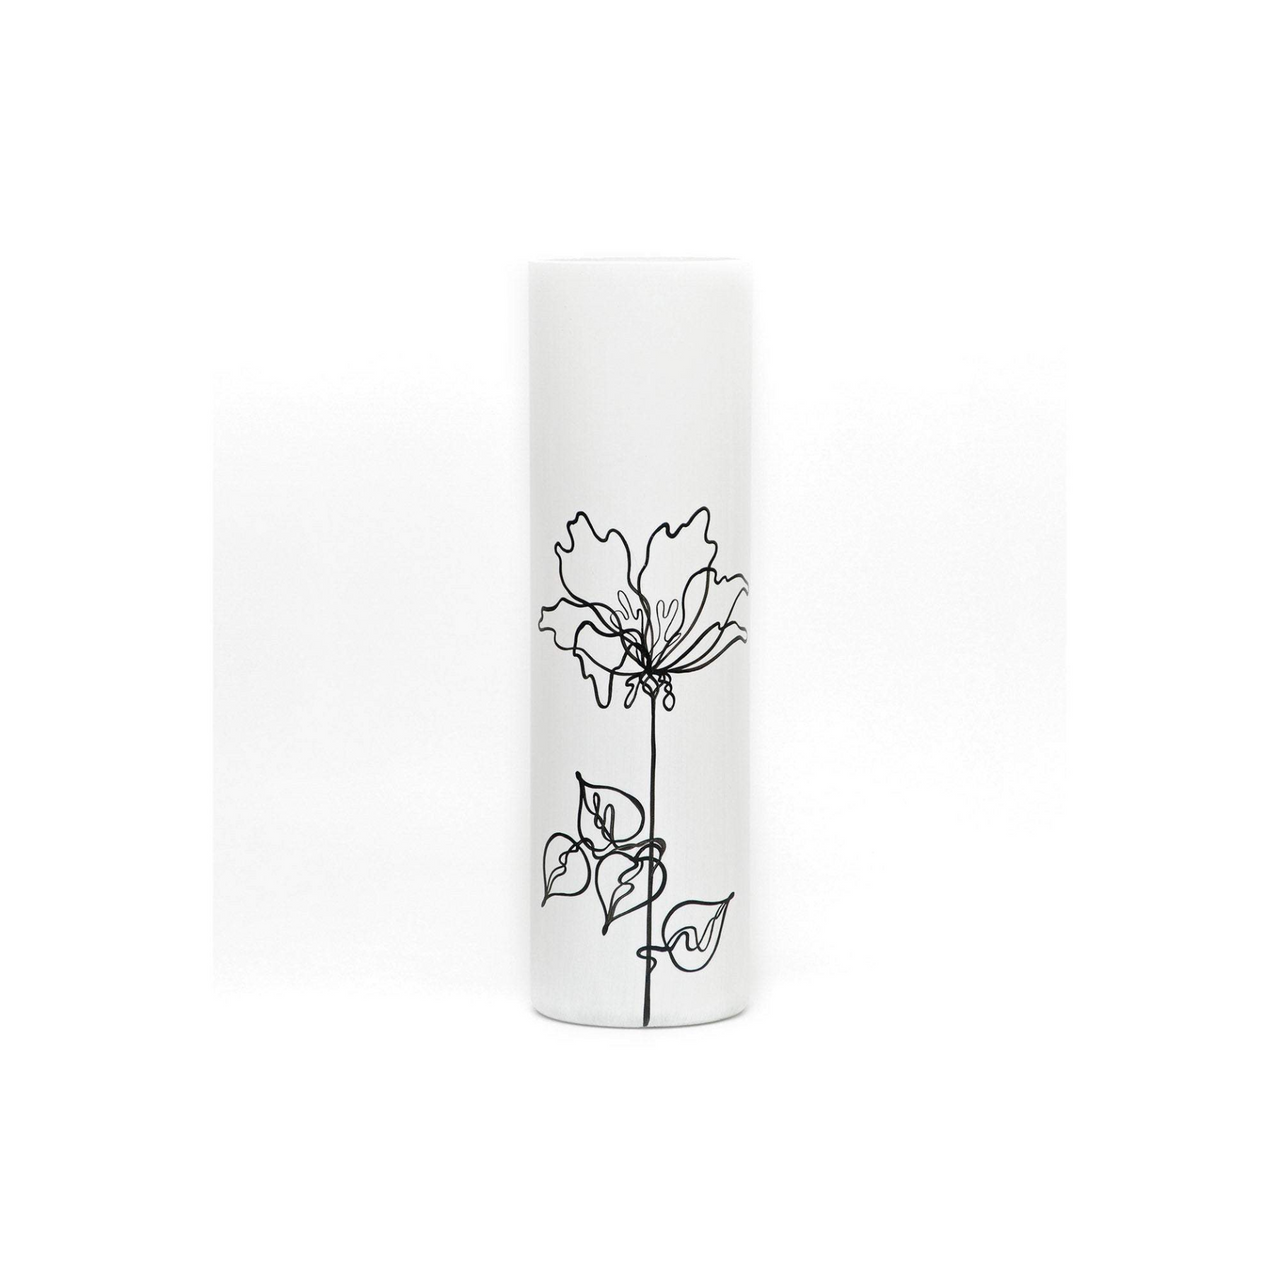 Black flower | Art decorated glass vase | Glass vase for flowers | Cylinder Vase | Interior Design | Home Decor | Large Floor Vase 16 inch